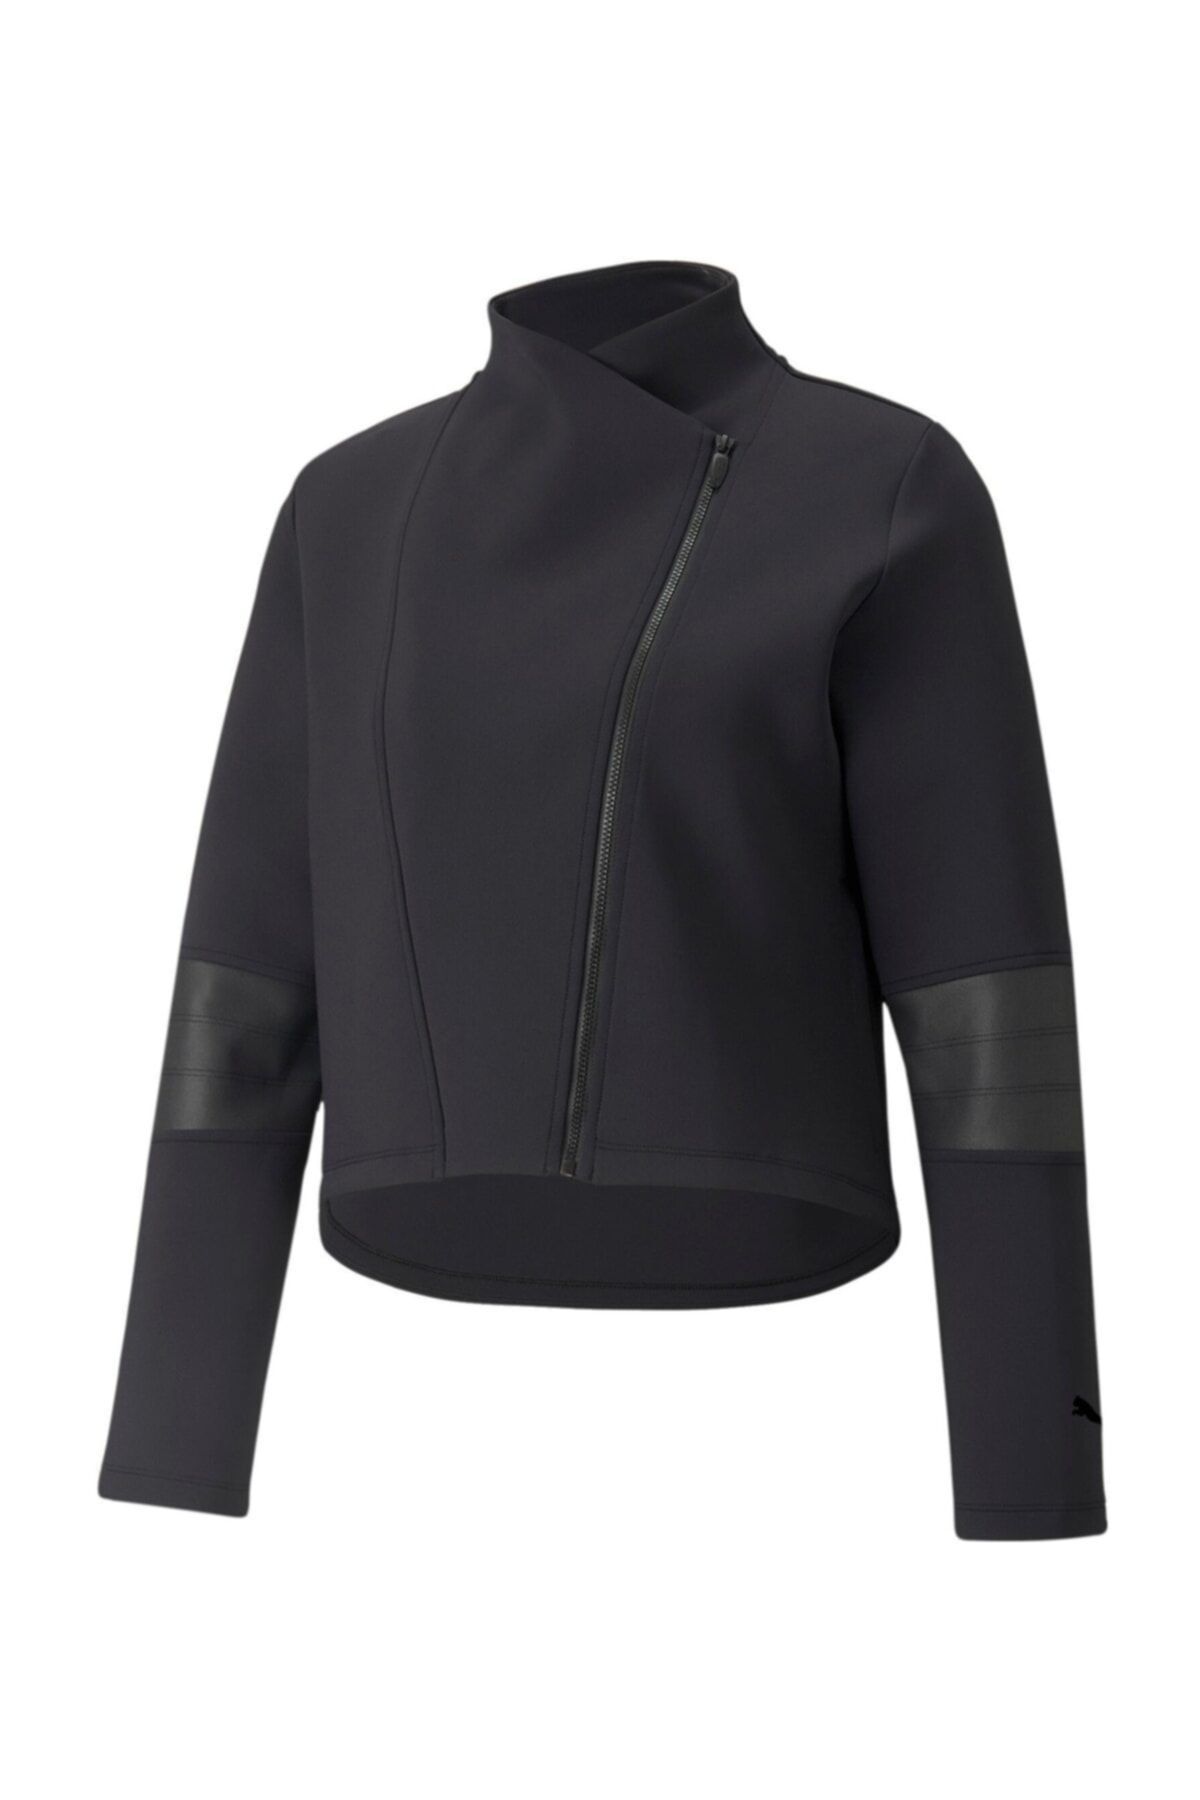 Puma Moto Jacket Kadın Siyah Ceket - 52092701